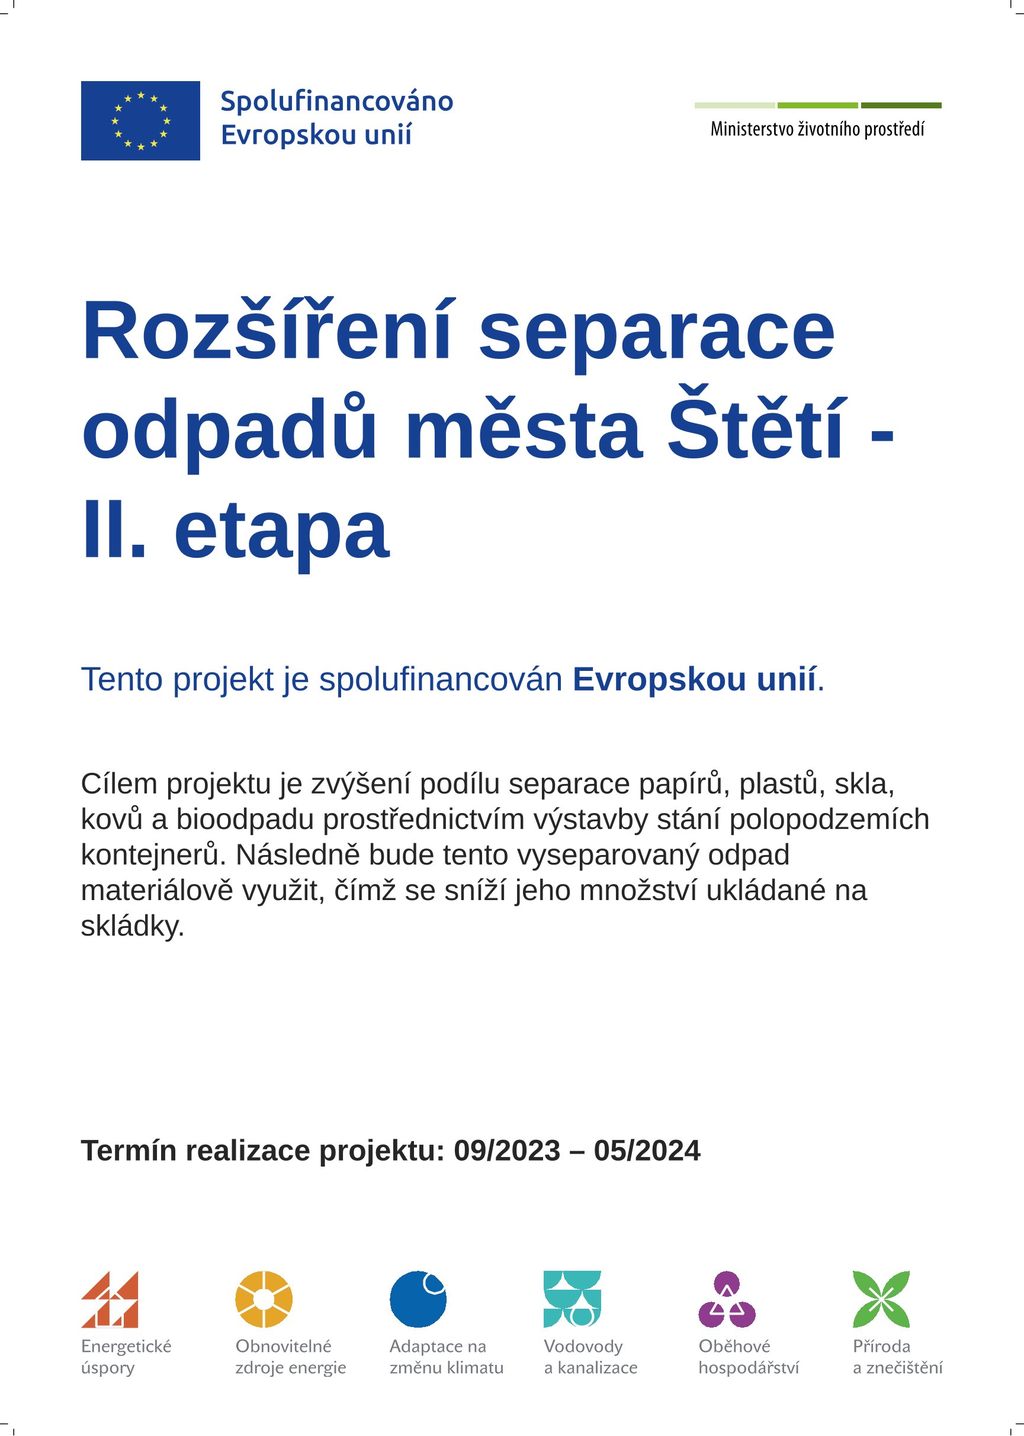 Rozšíření separace odpadů města Štětí II. etapa